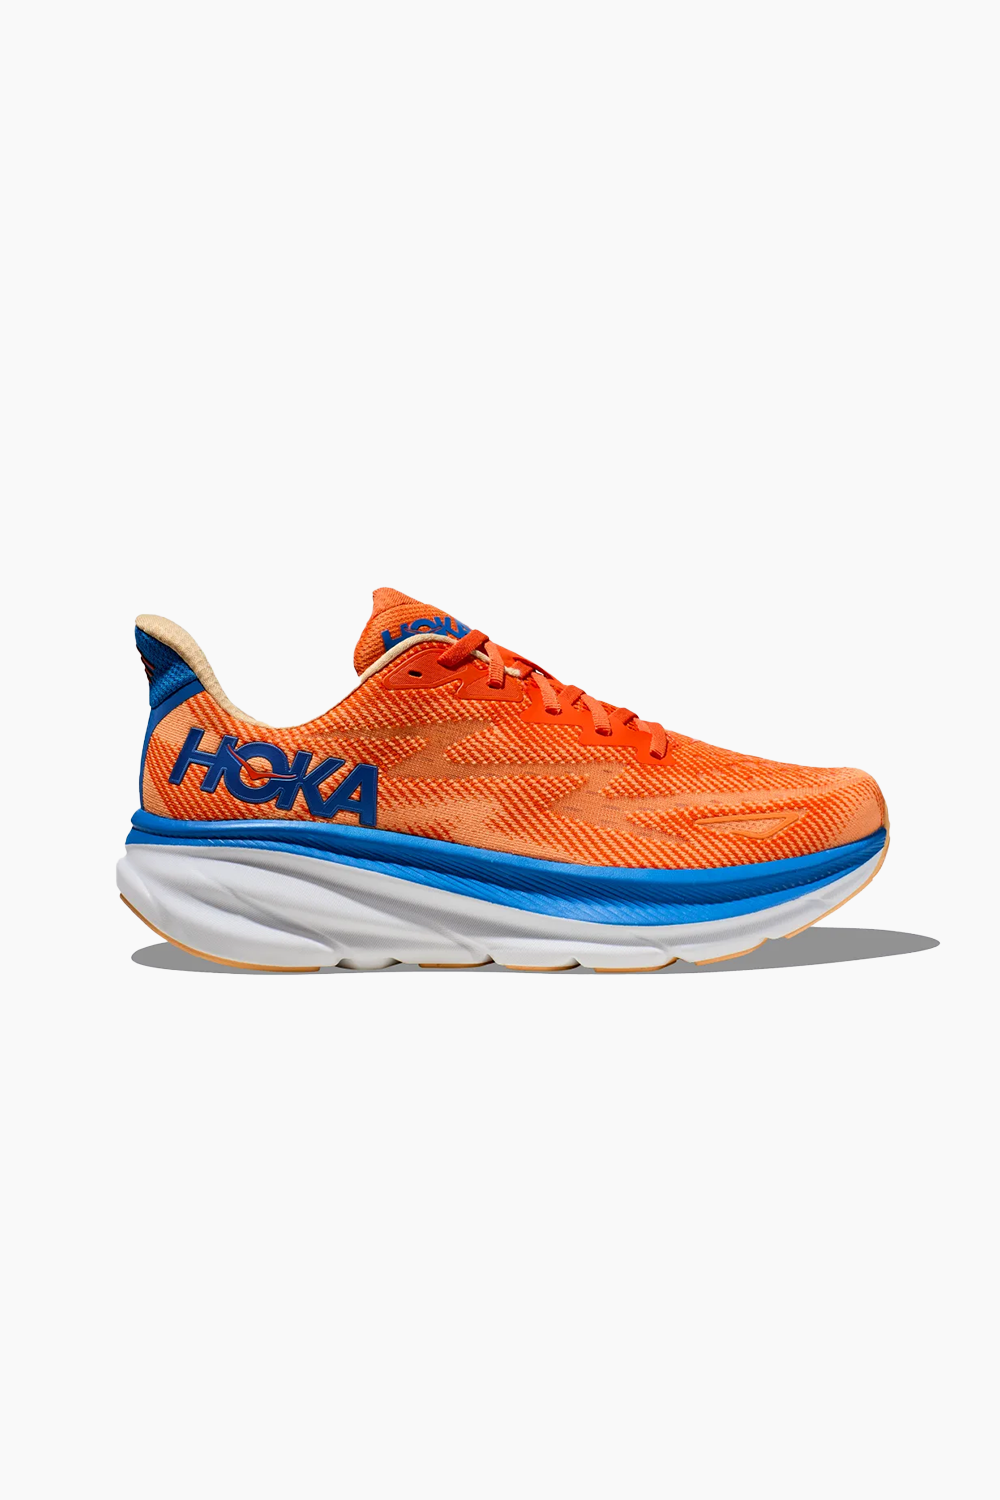 Hoka Men's Clifton 9 Sneaker in Vibrant Orange/Impala